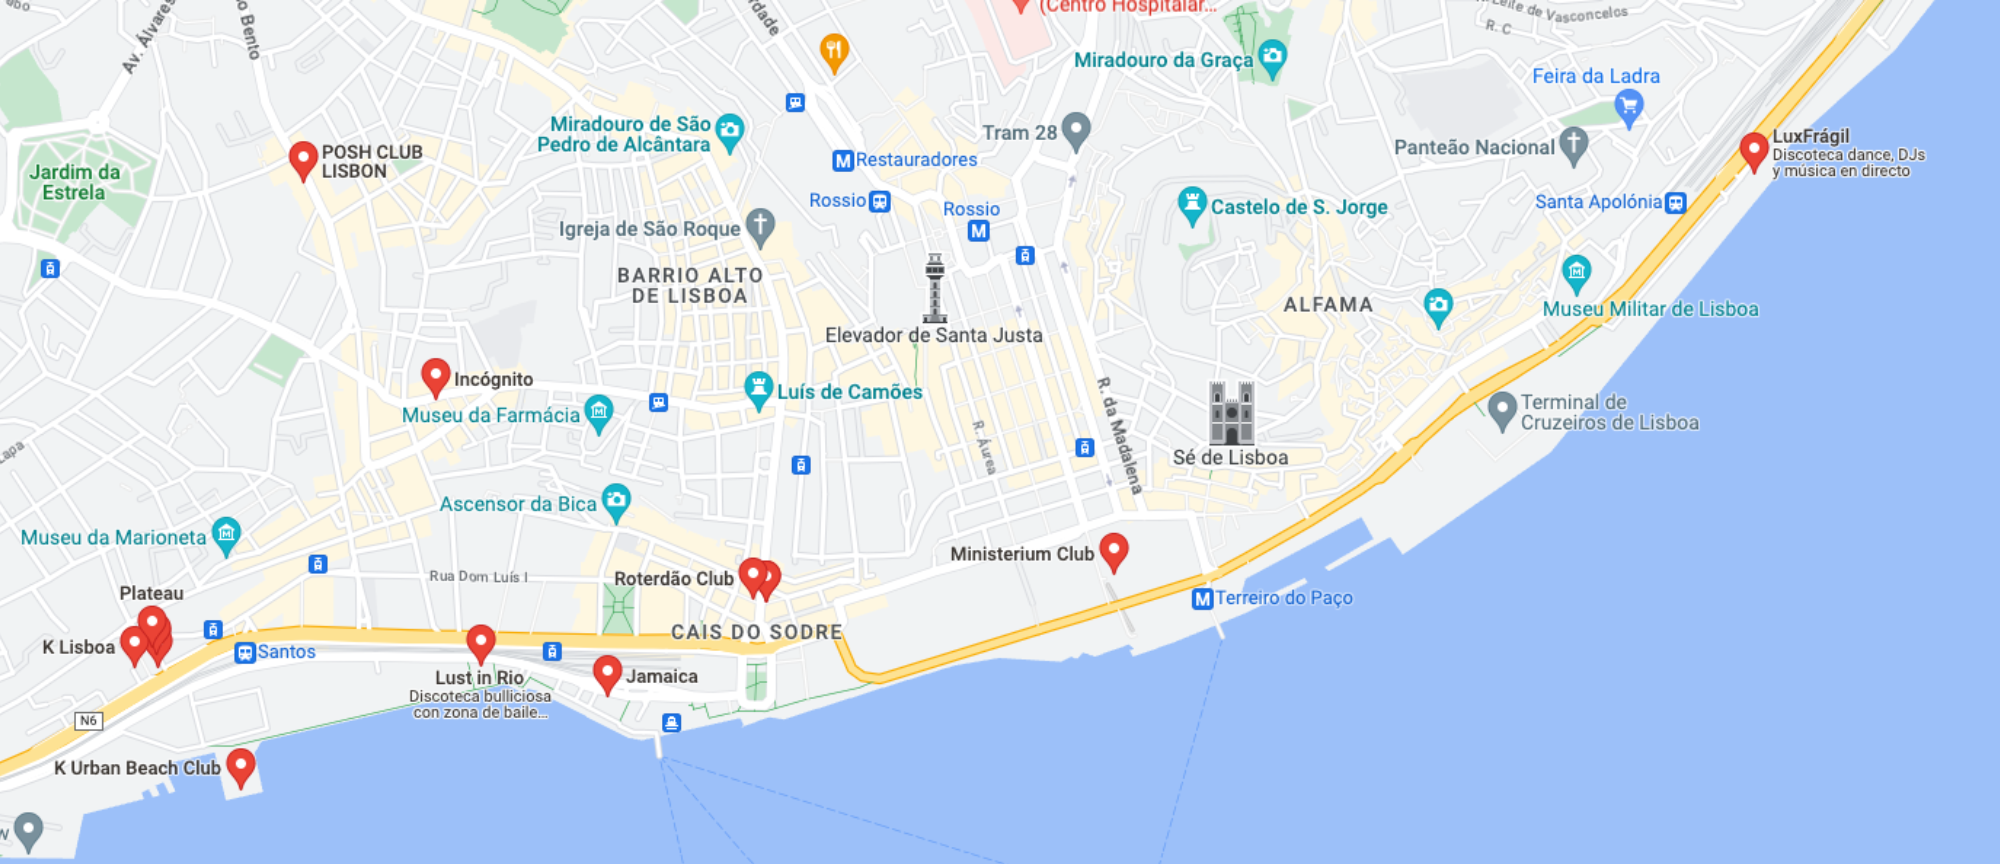 La vida nocturna de Lisboa: Las mejores zonas para salir de fiesta en Lisboa en 2023